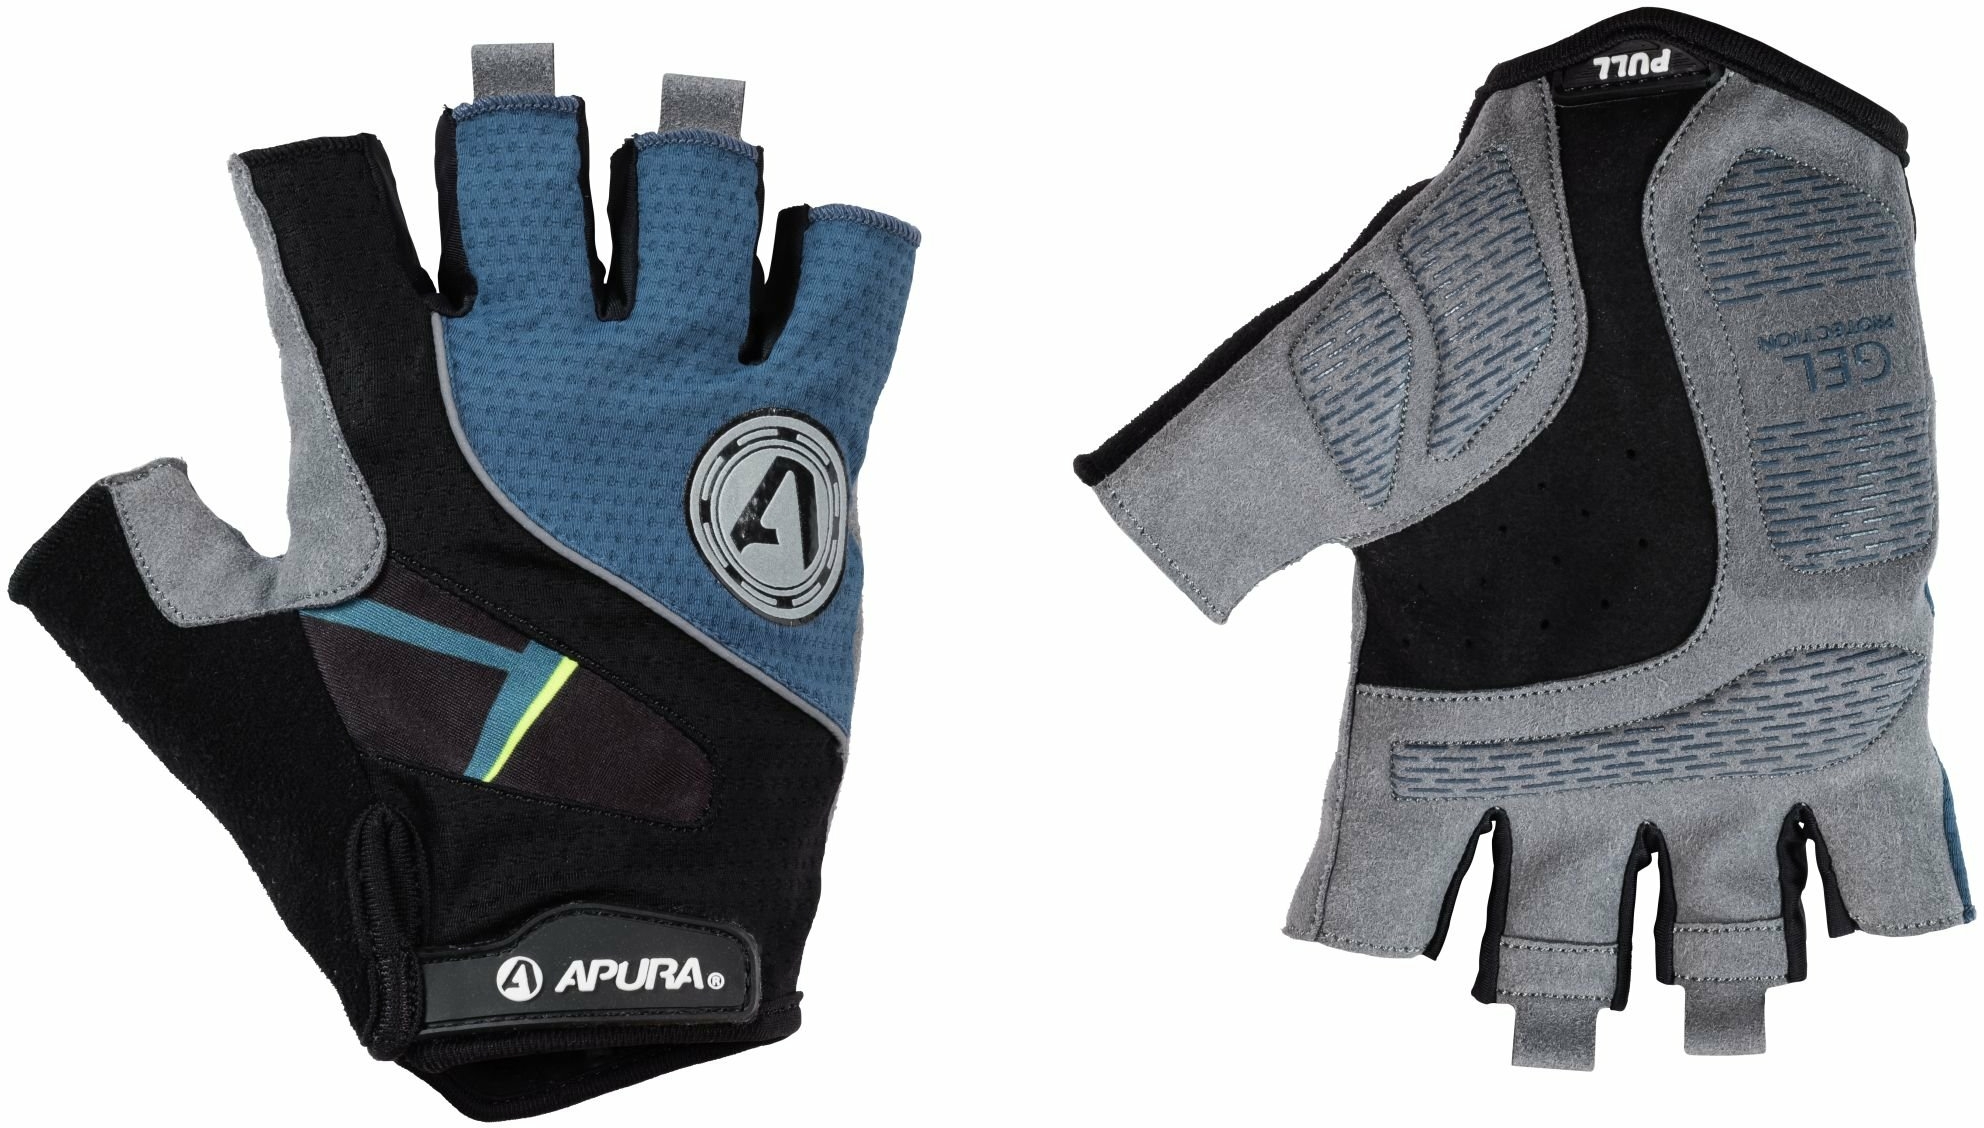 Bekleidung/Handschuhe: Apura  Herren Handschuh Essential XS 